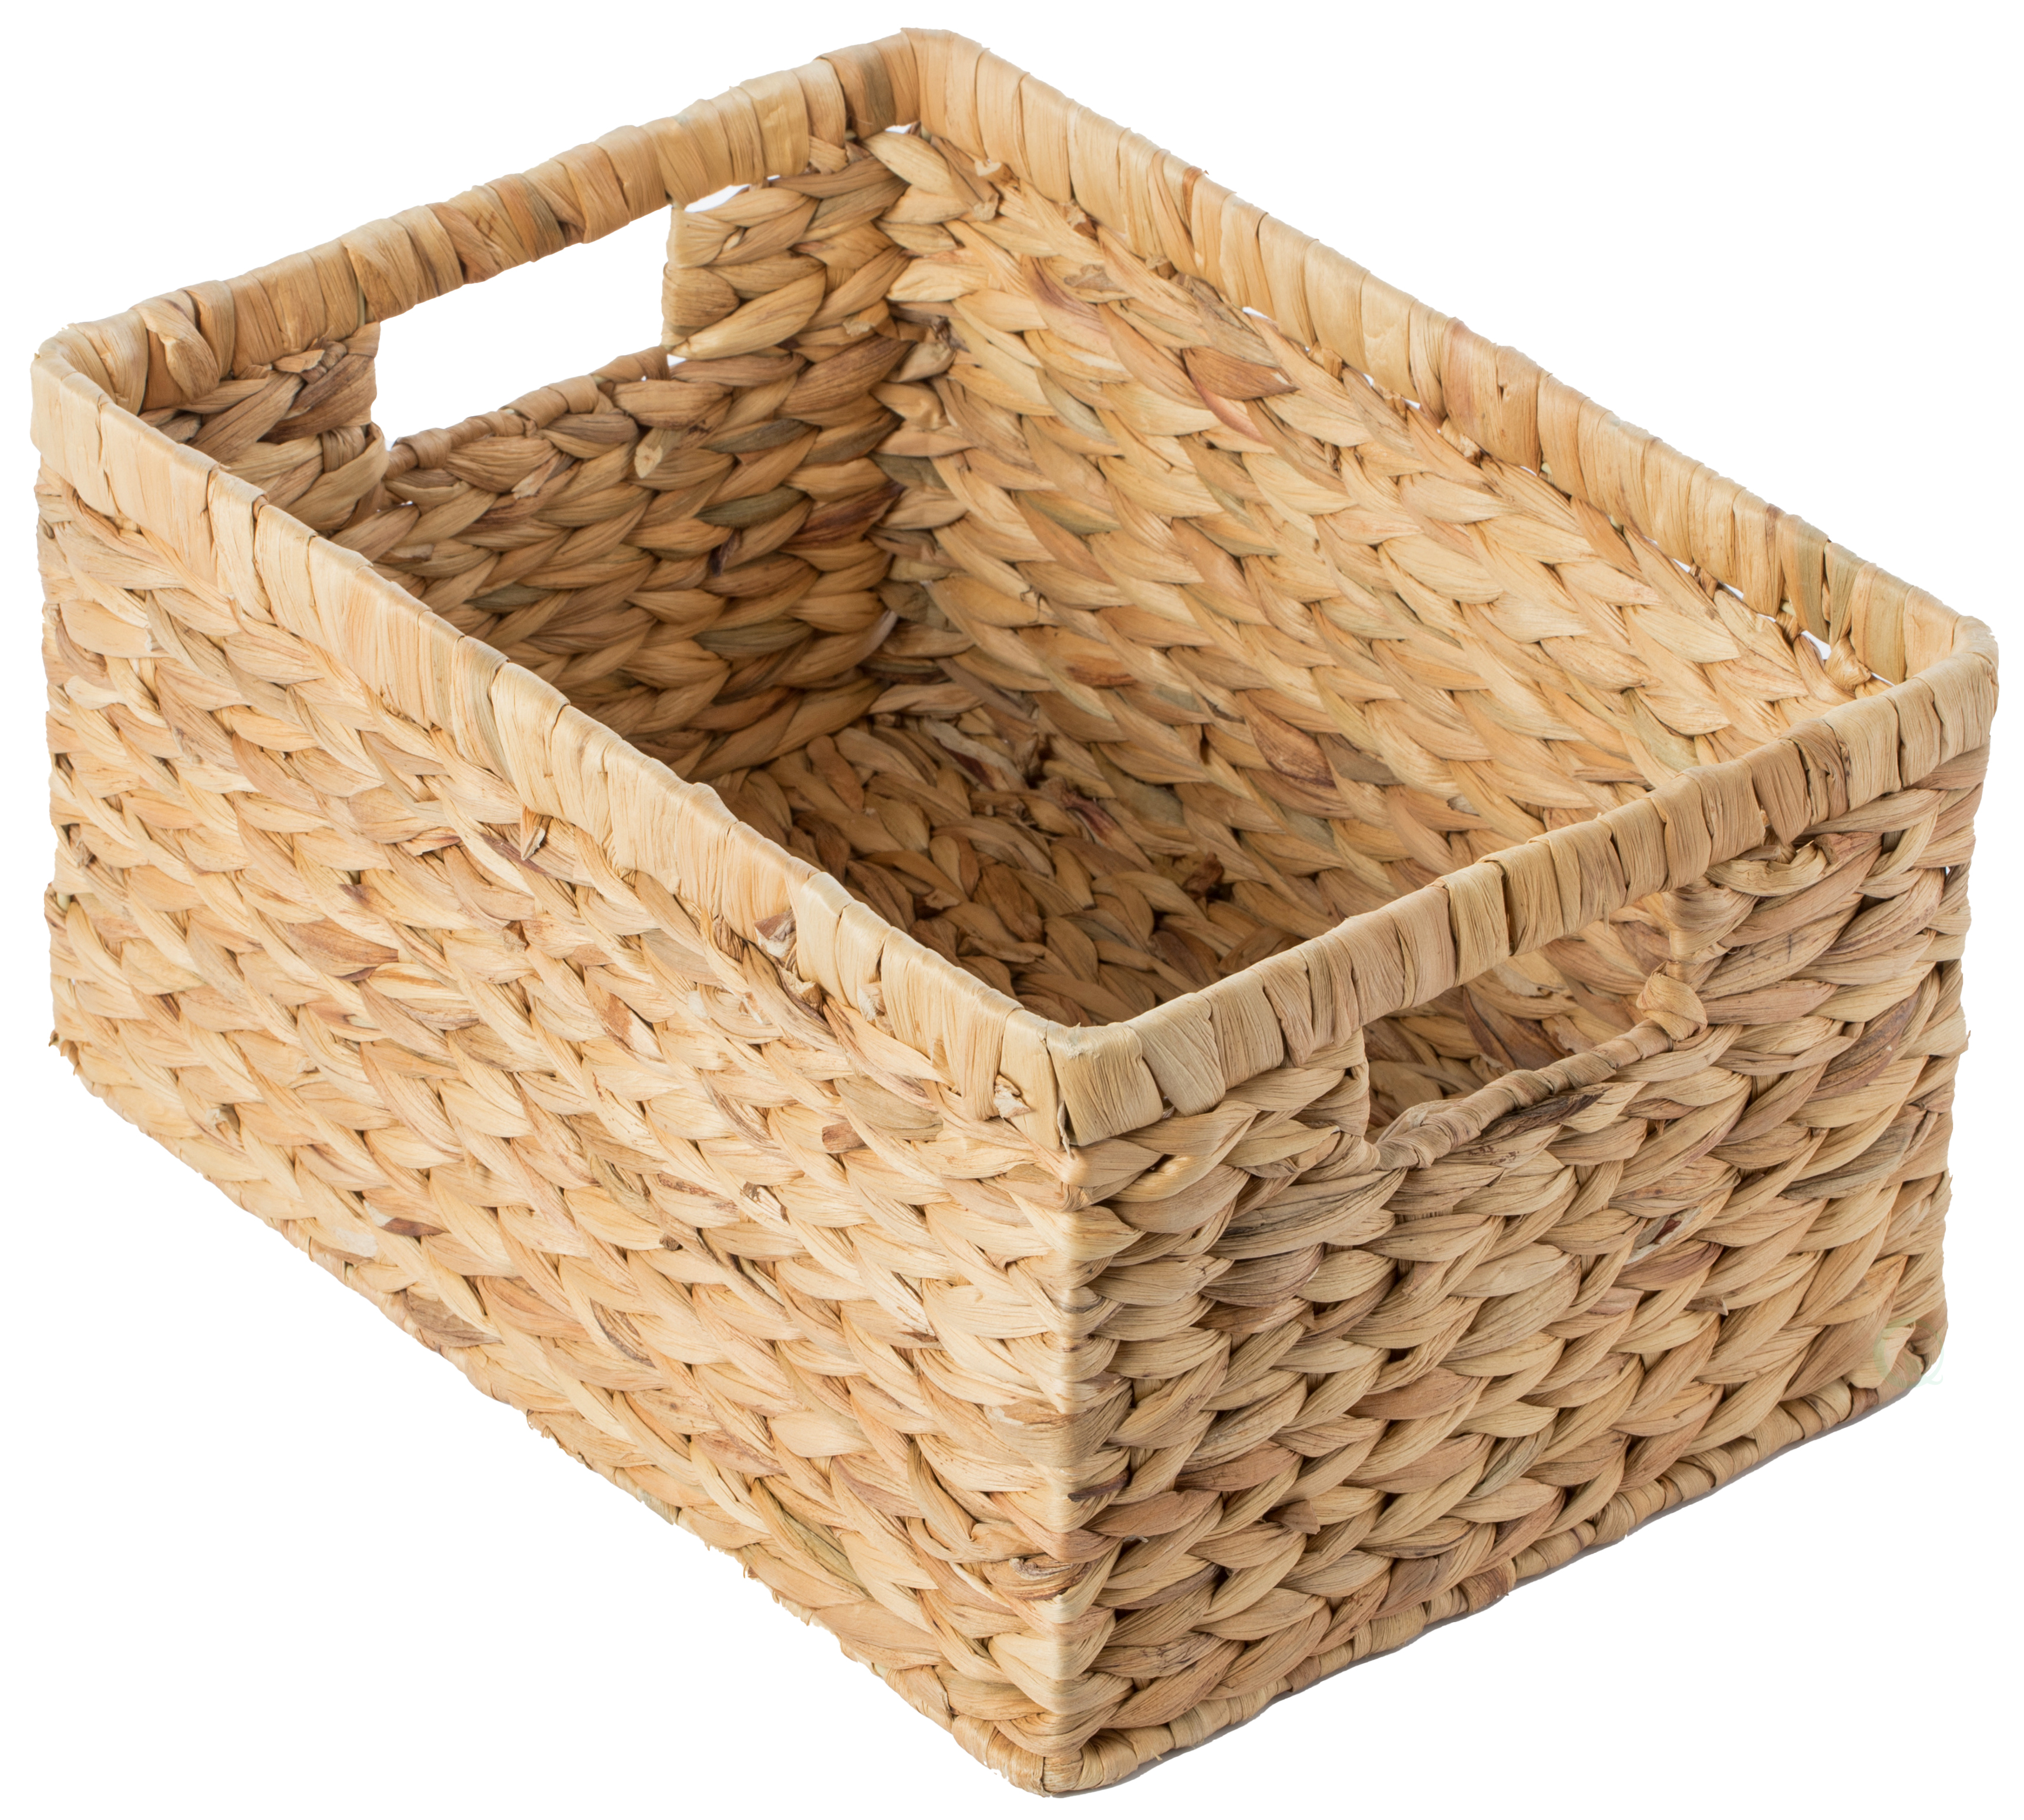 Woven Plastic Wicker Baskets Storage Bins